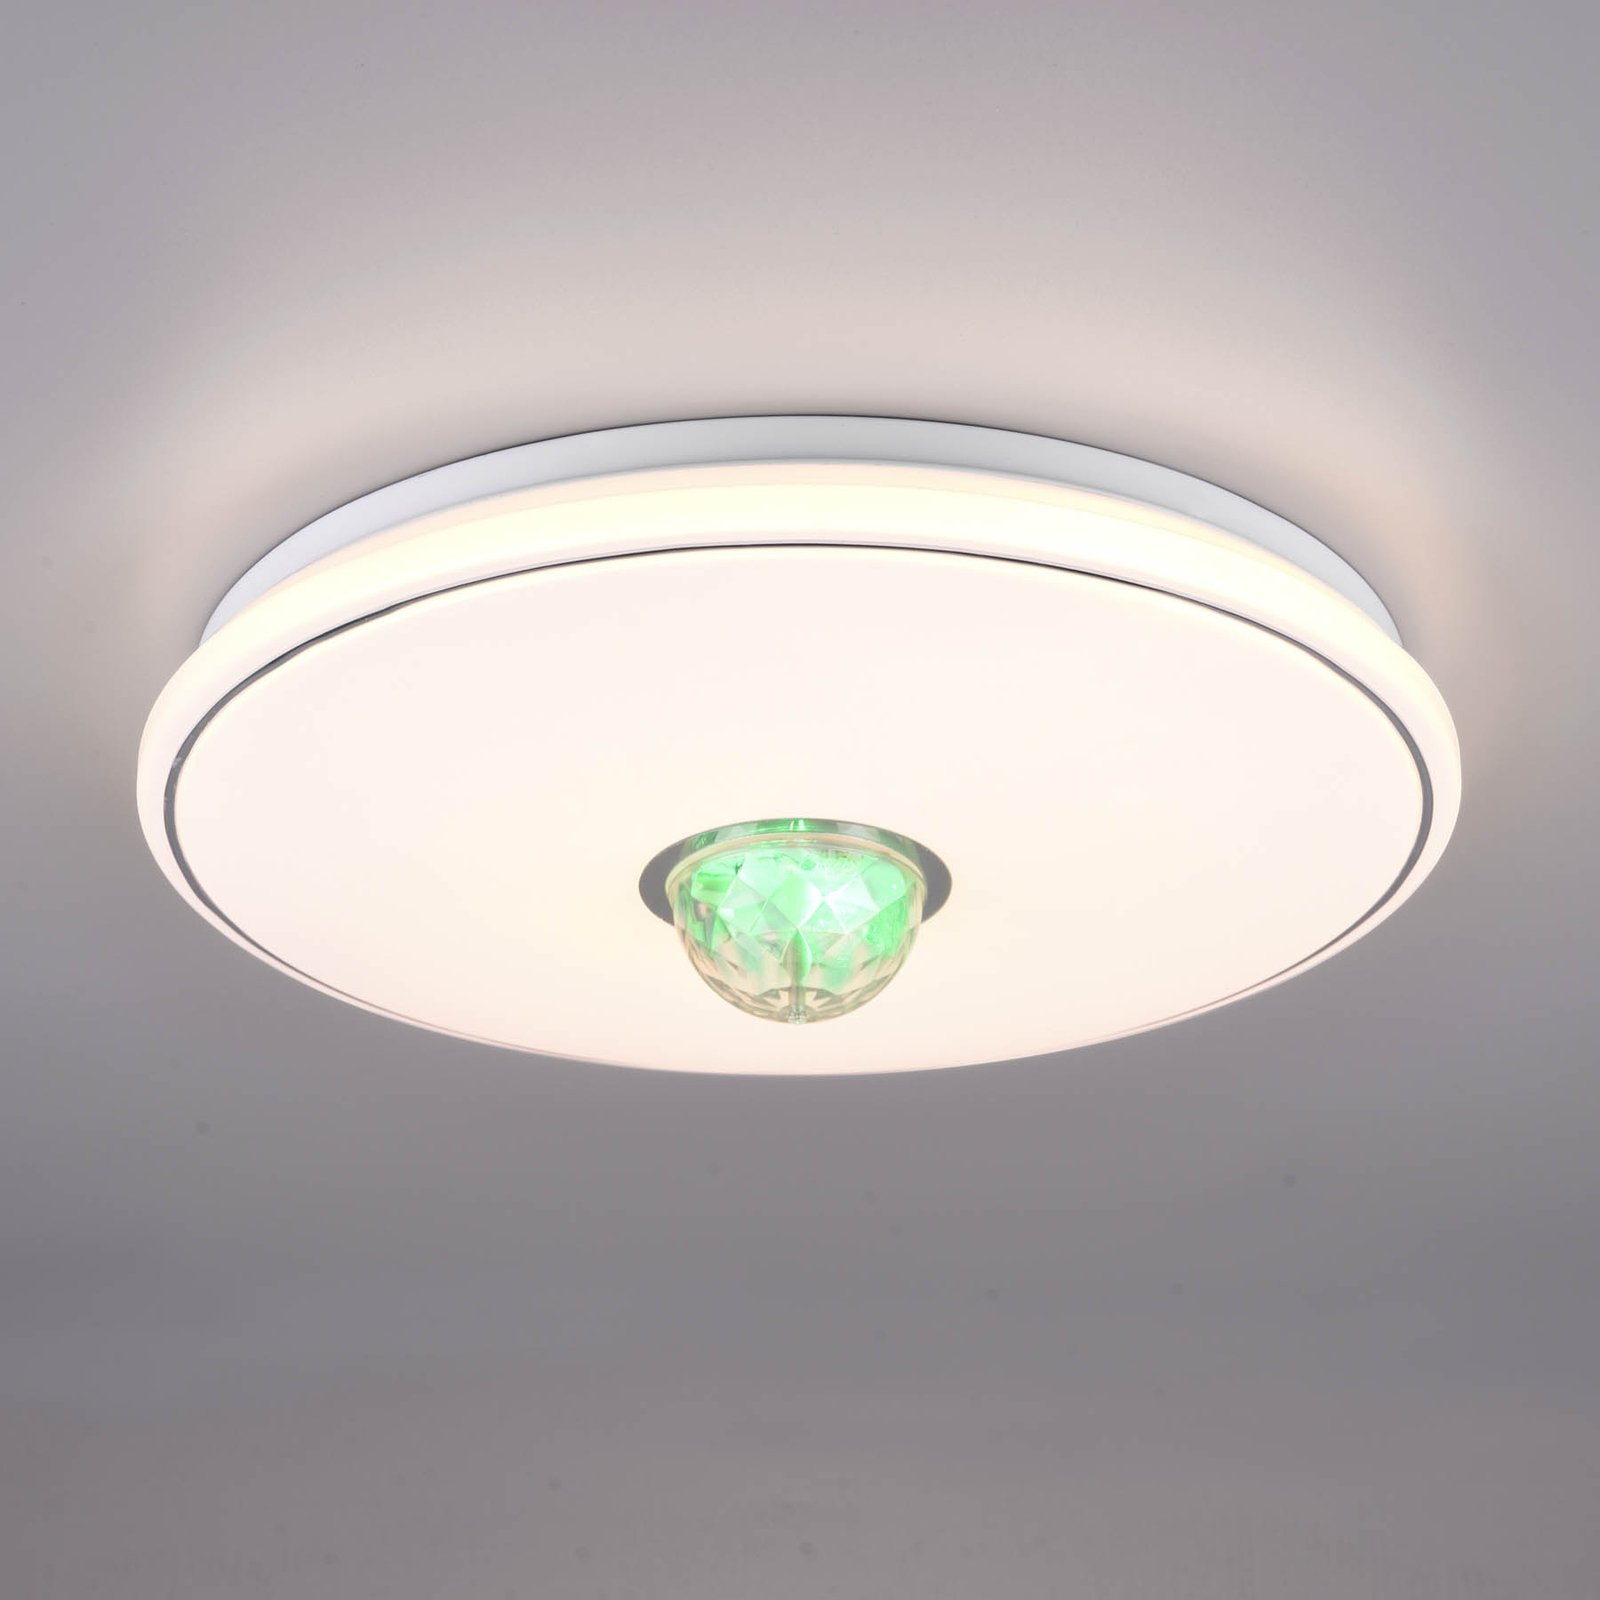 LED stropní světlo Rave, ovladač, stmívatelné, RGB